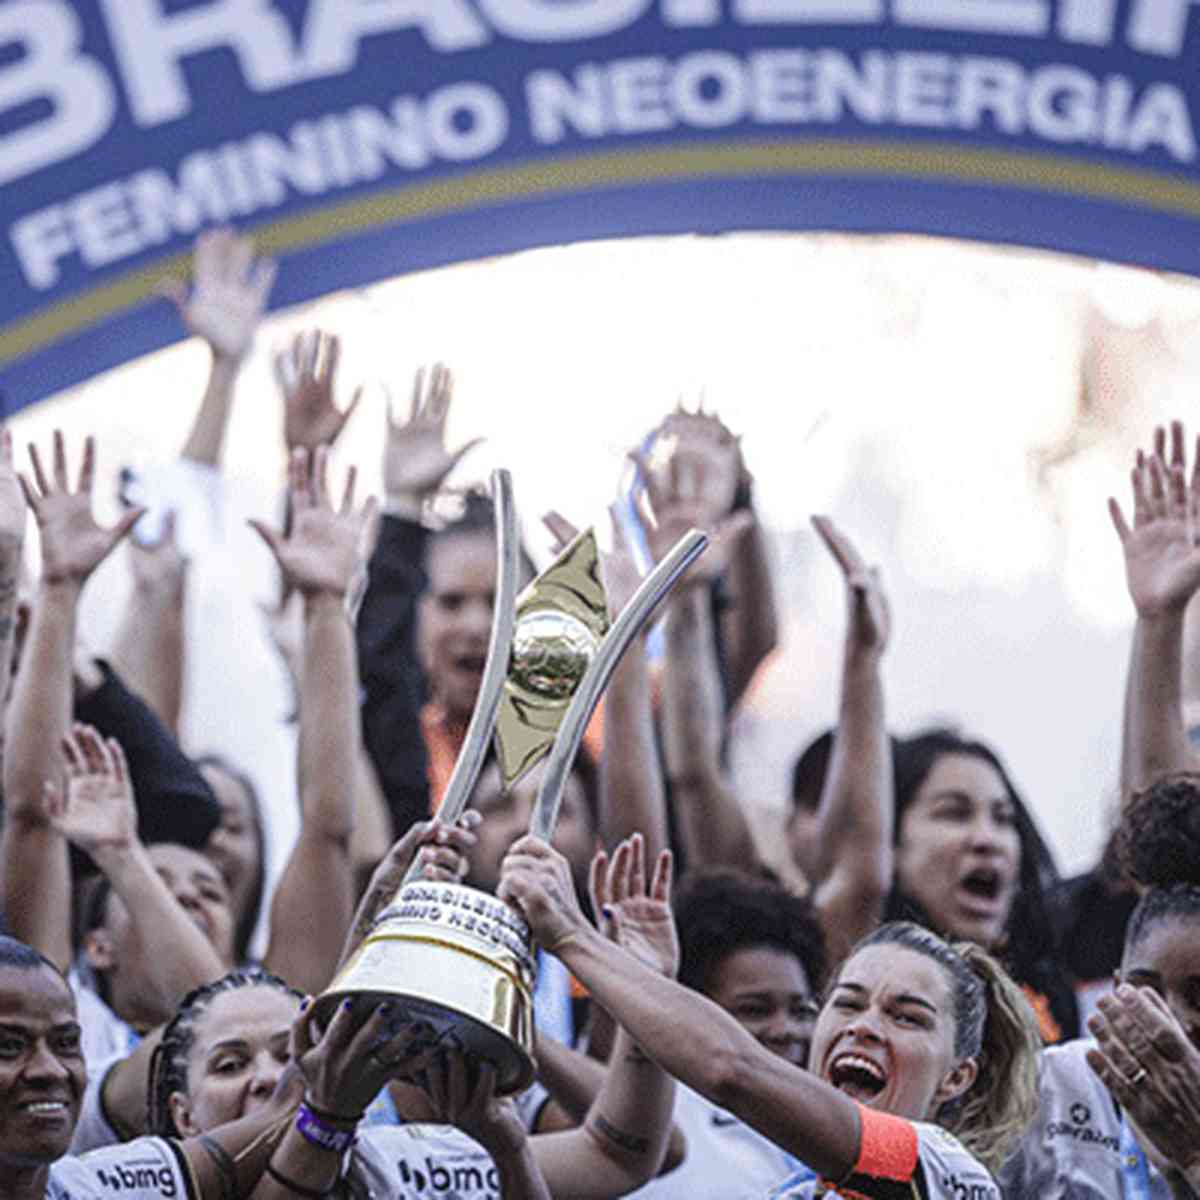 Campeonato Brasileiro Feminino 2022 :: Brasil :: Perfil da Edição 